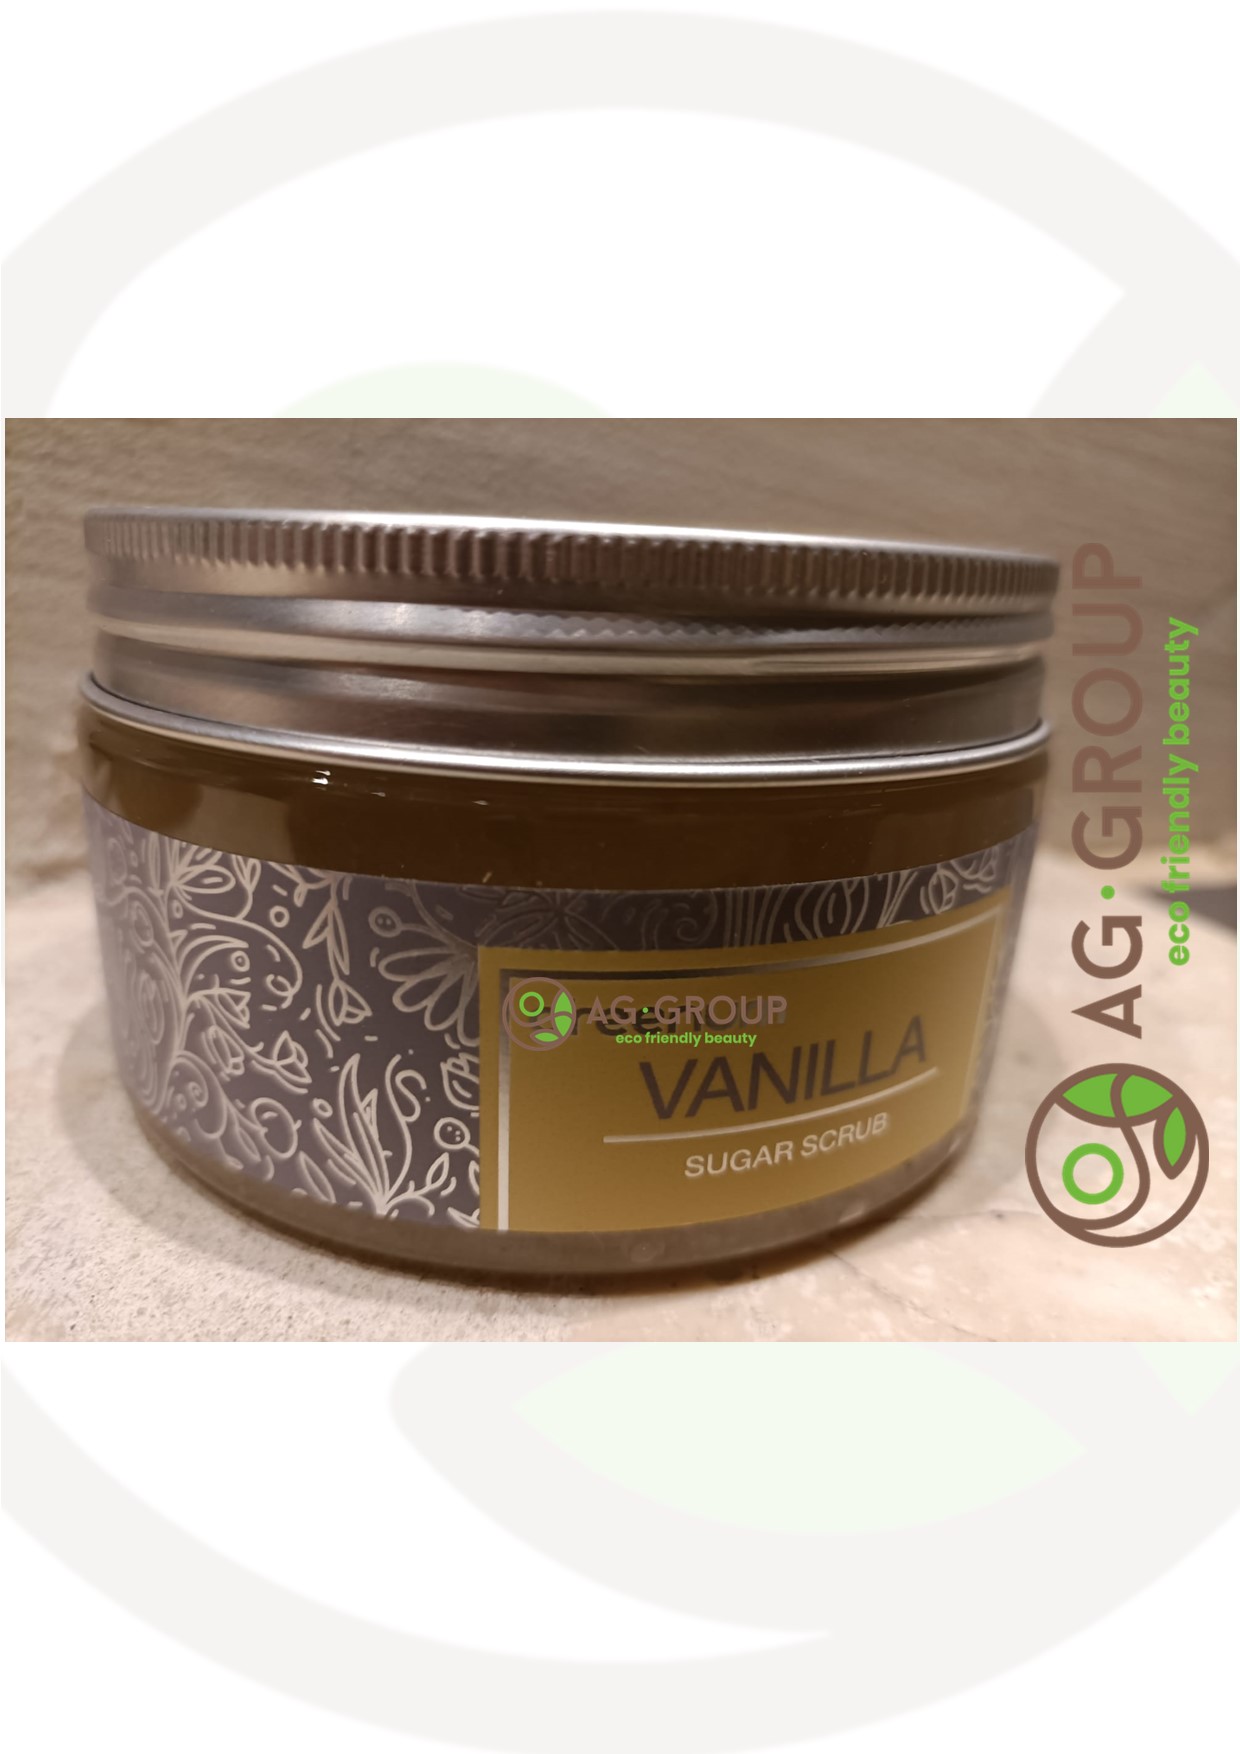 Featured image for “Scrub zucchero green alla vaniglia 300gr”